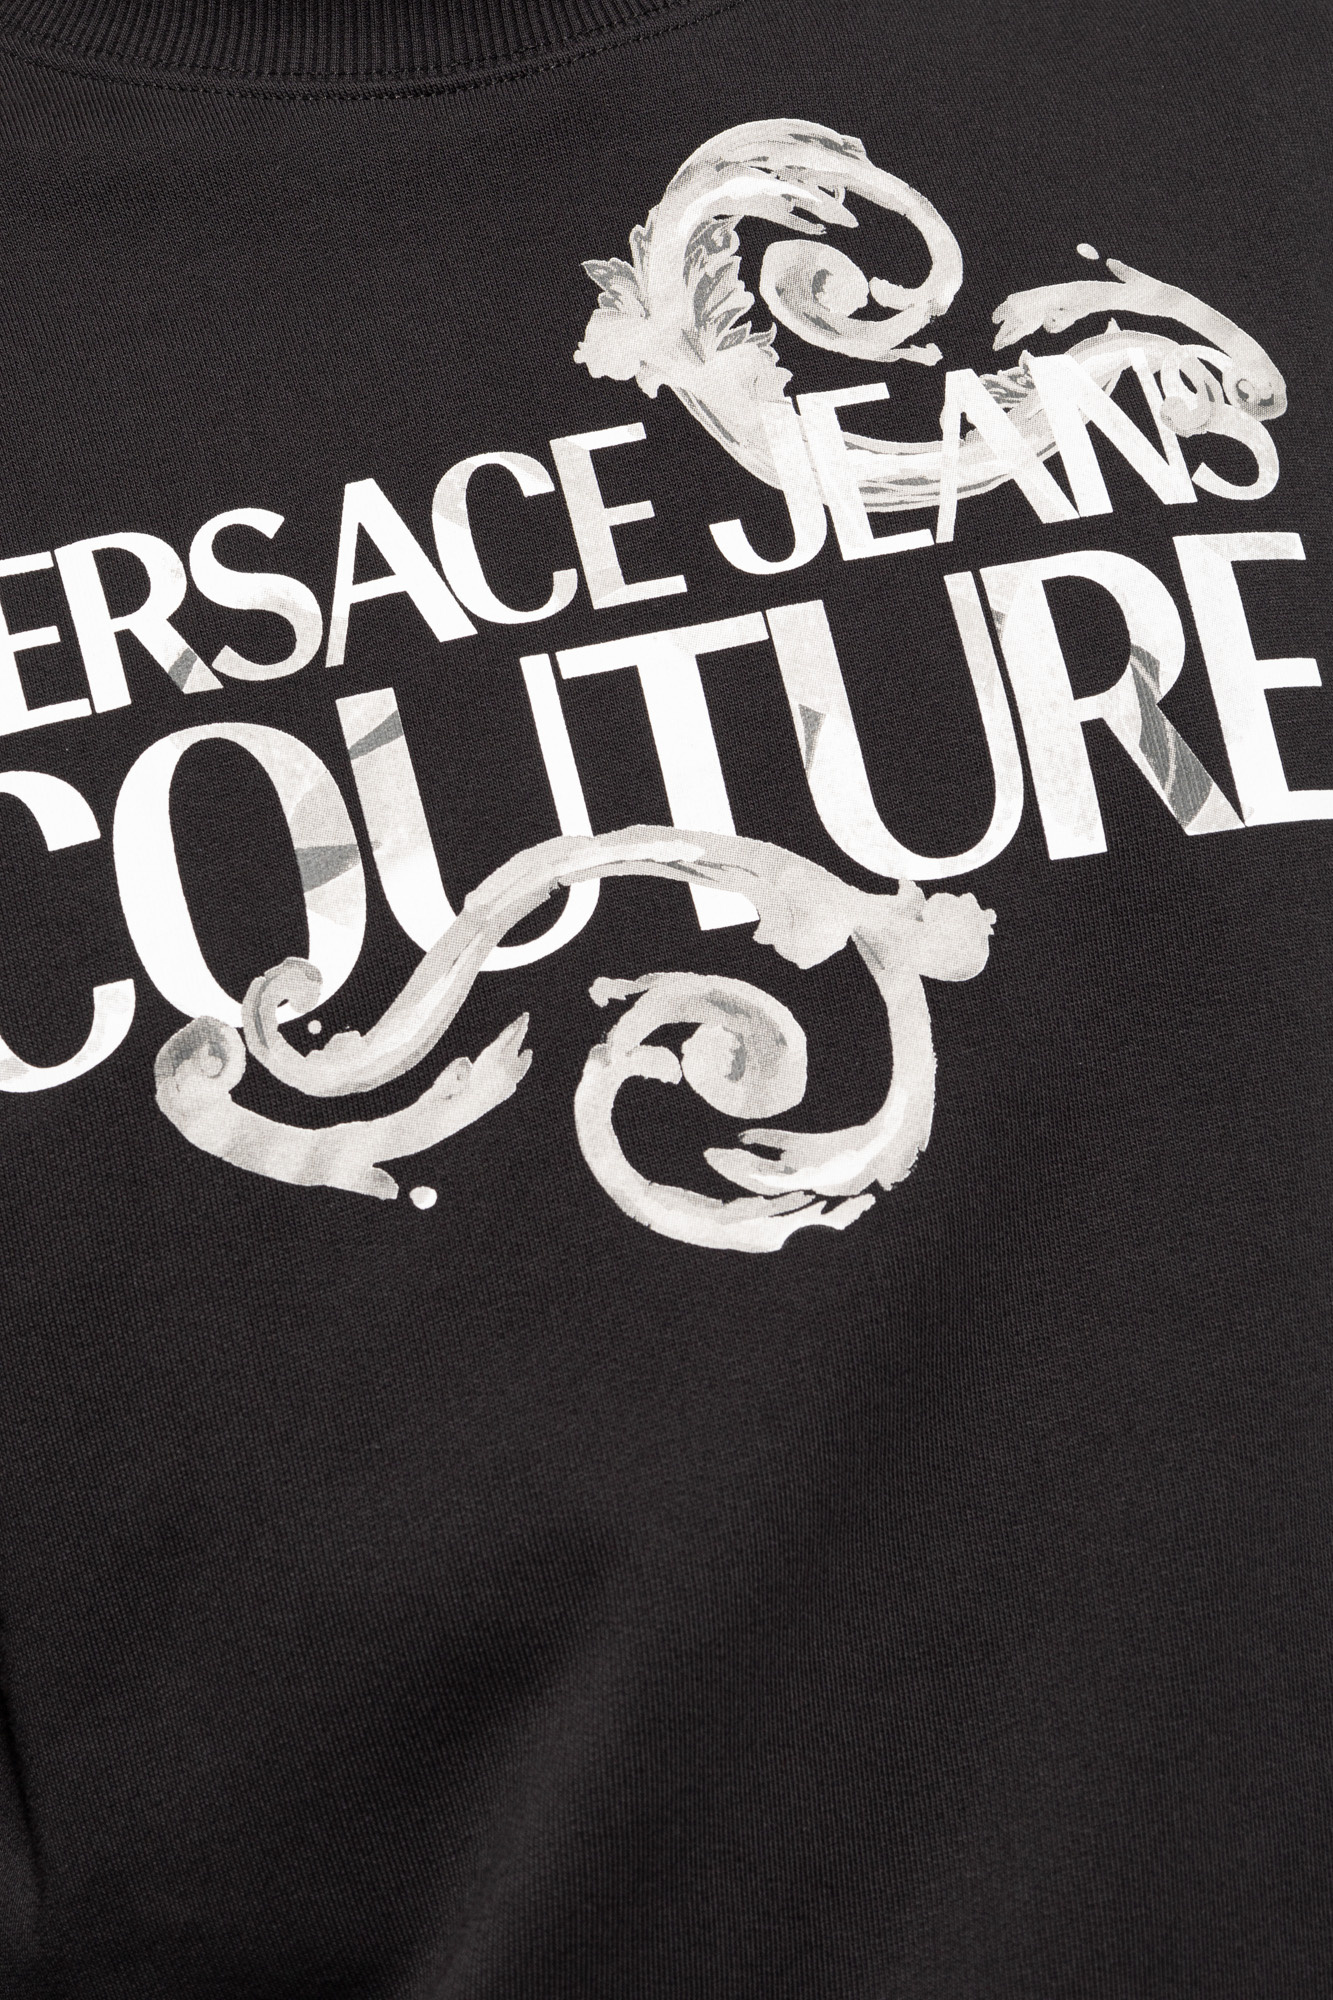 Versace Jeans Couture Cotton Mens